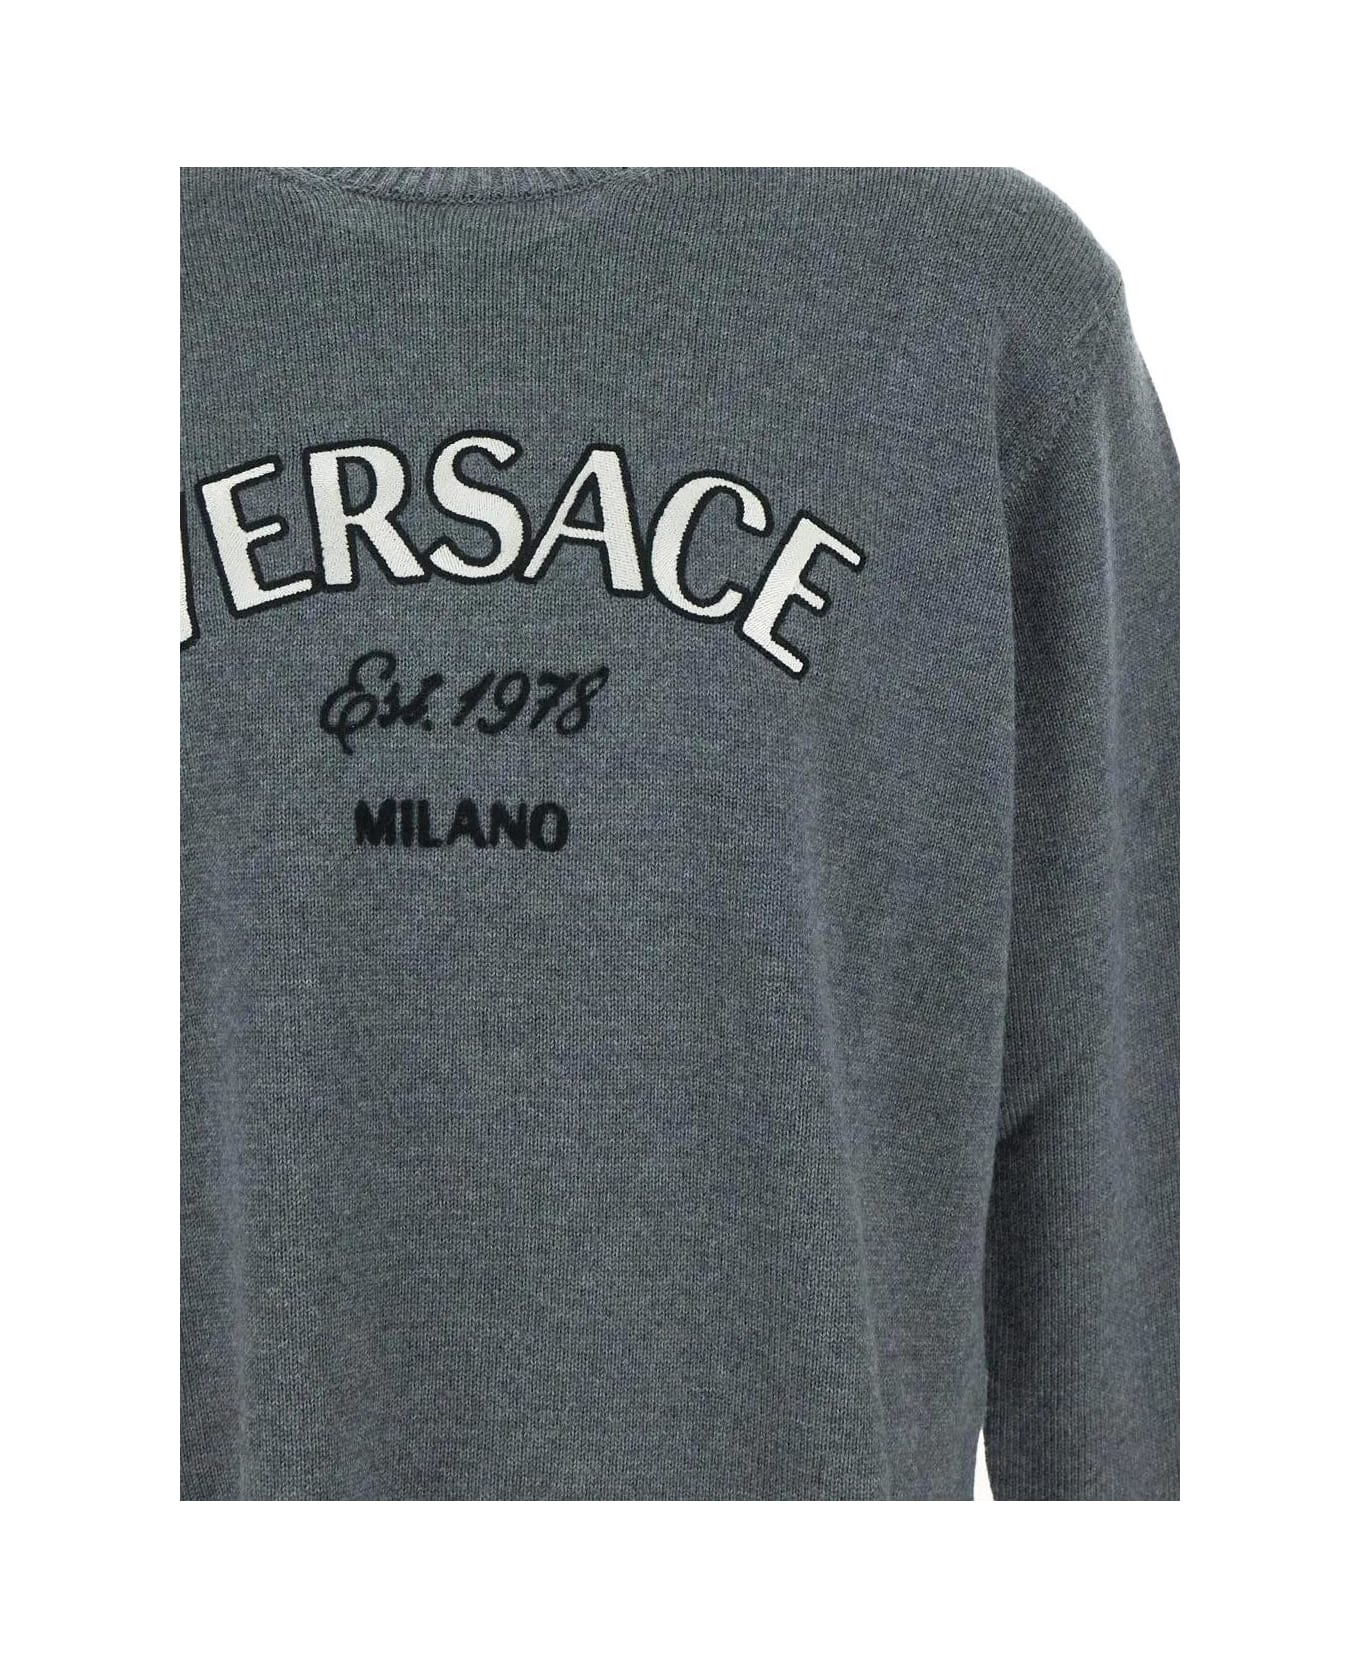 Versace Wool Knitwear - Charcoal Melange